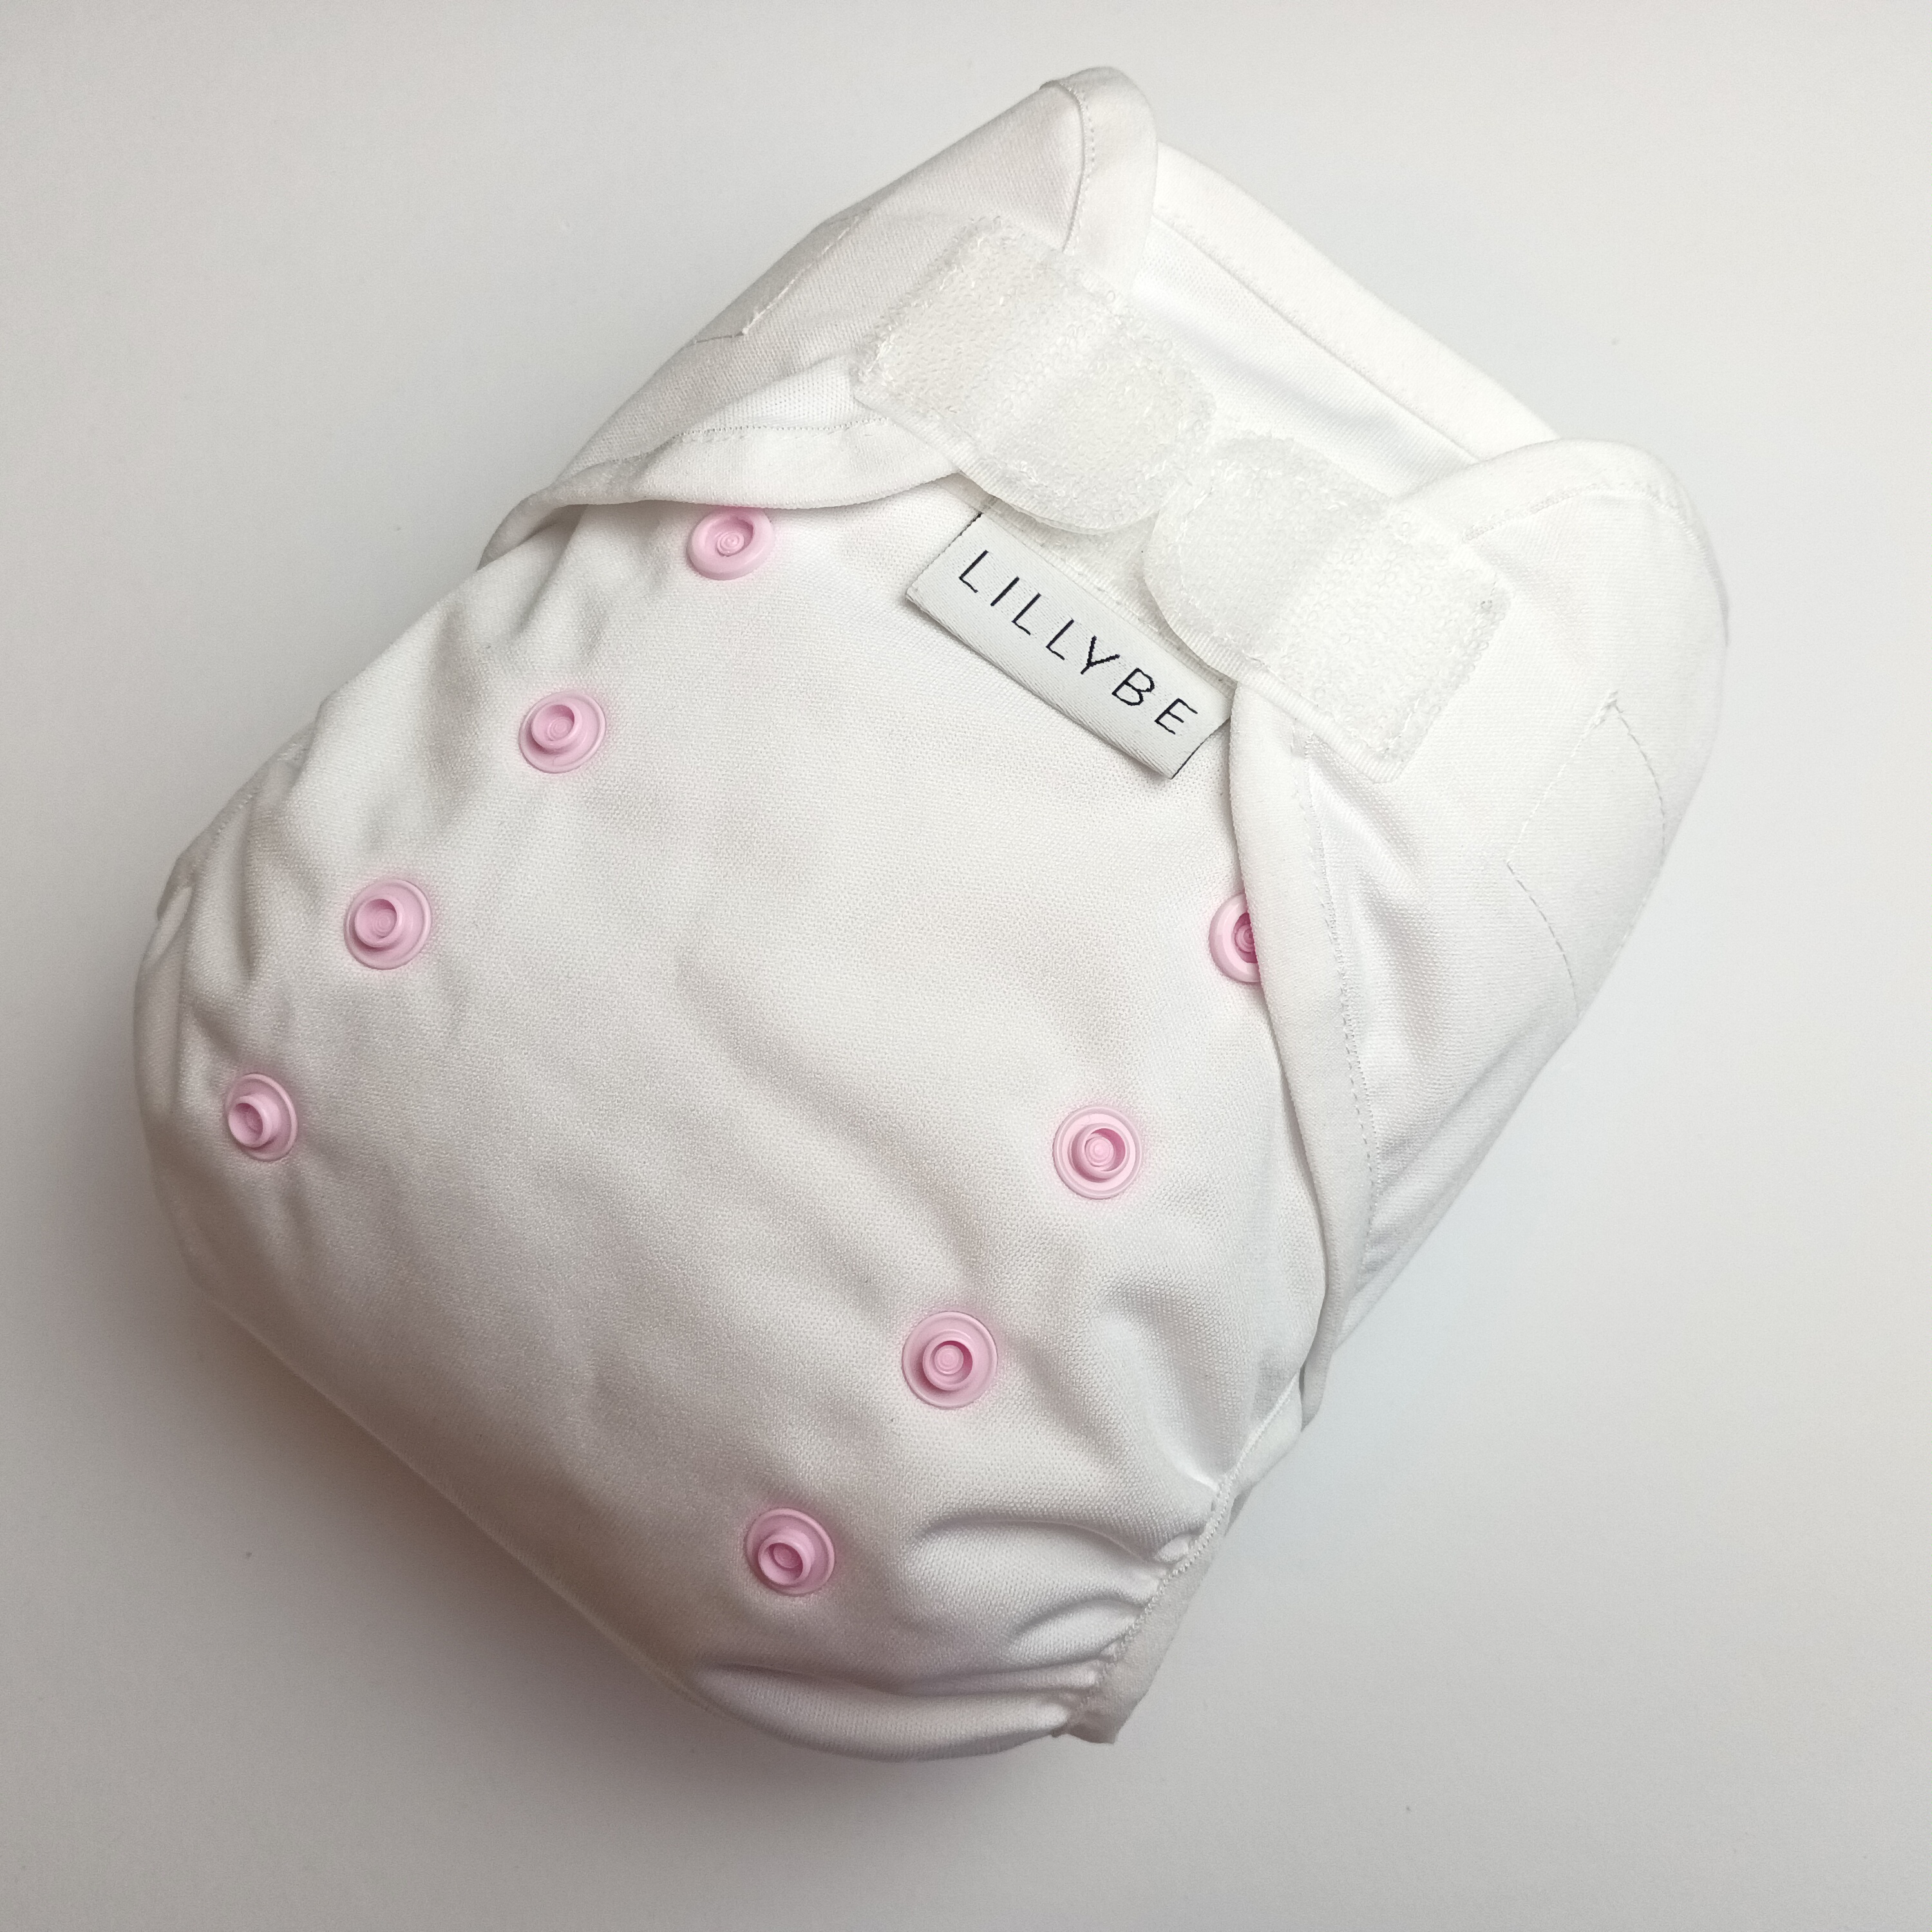 Svrchní kalhotky Lillybe, bílé s růžovými patentky